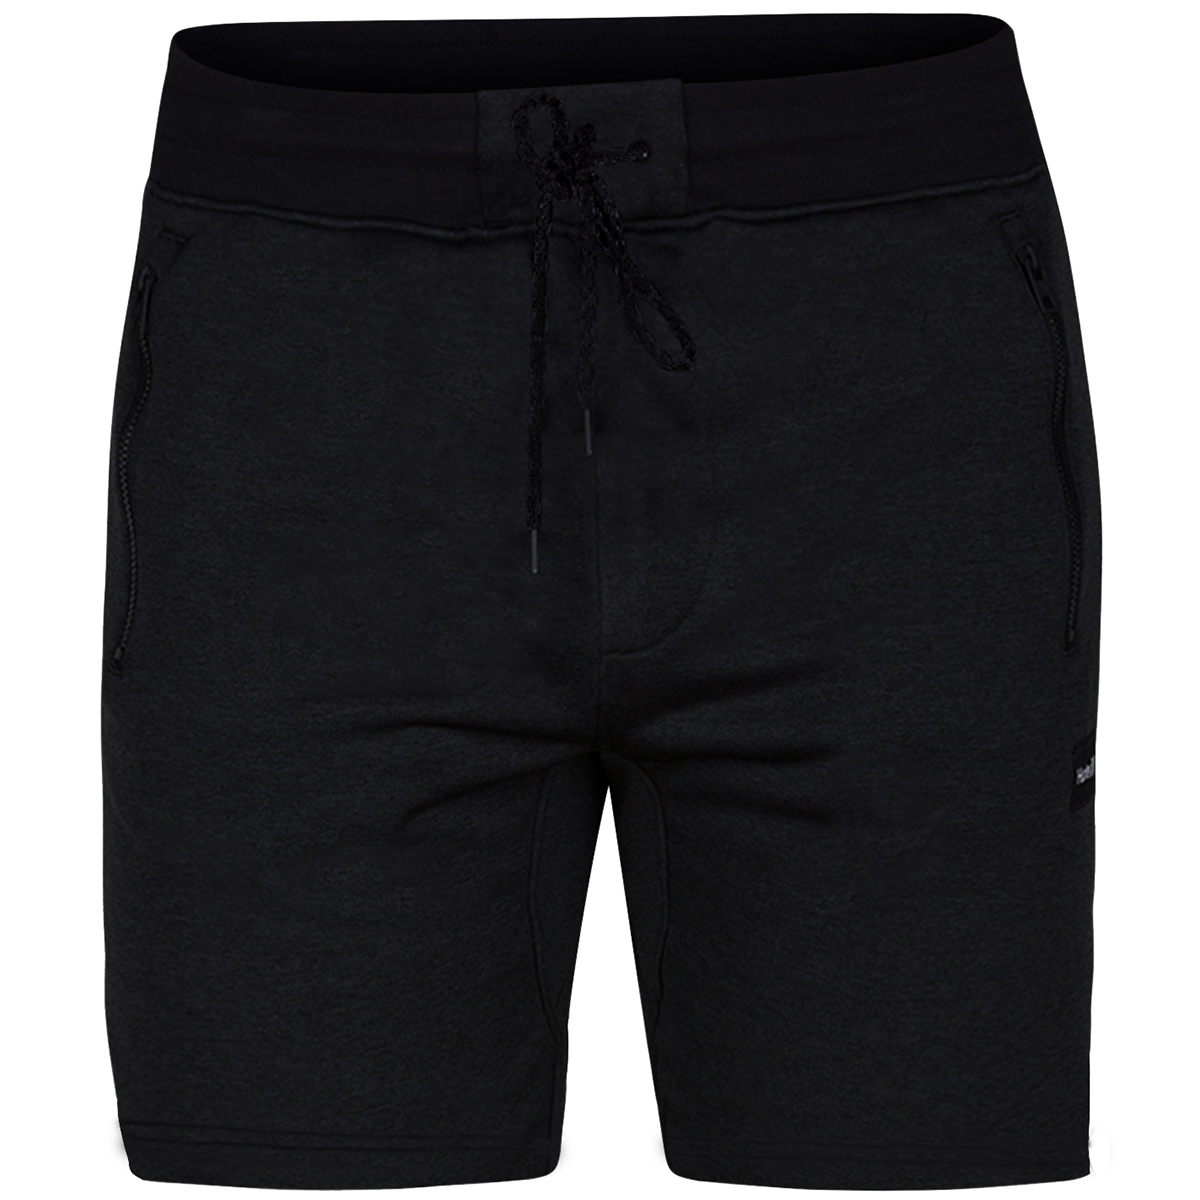 Hurley Men's Dri-Fit Disperse Shorts - Black, XL